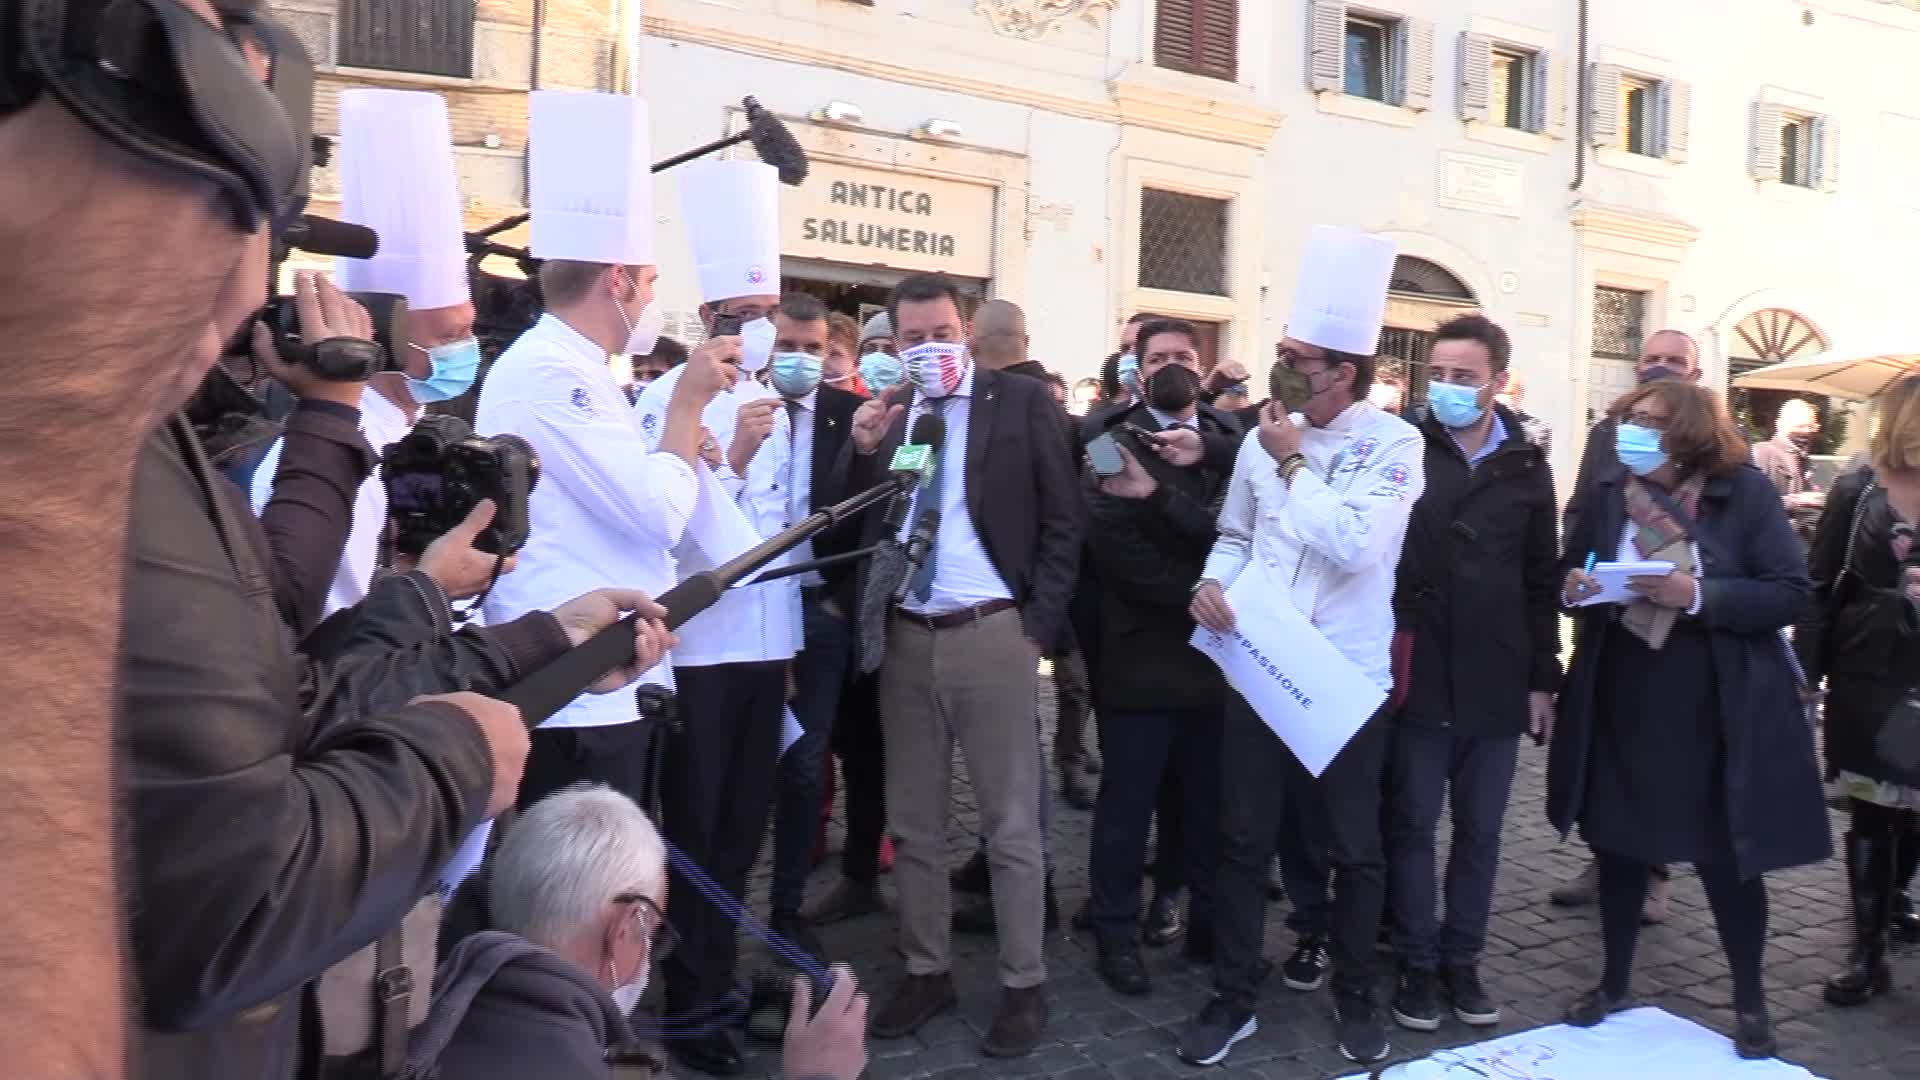 Dpcm, protestano i ristoratori. A Roma i manifestanti contestano Salvini